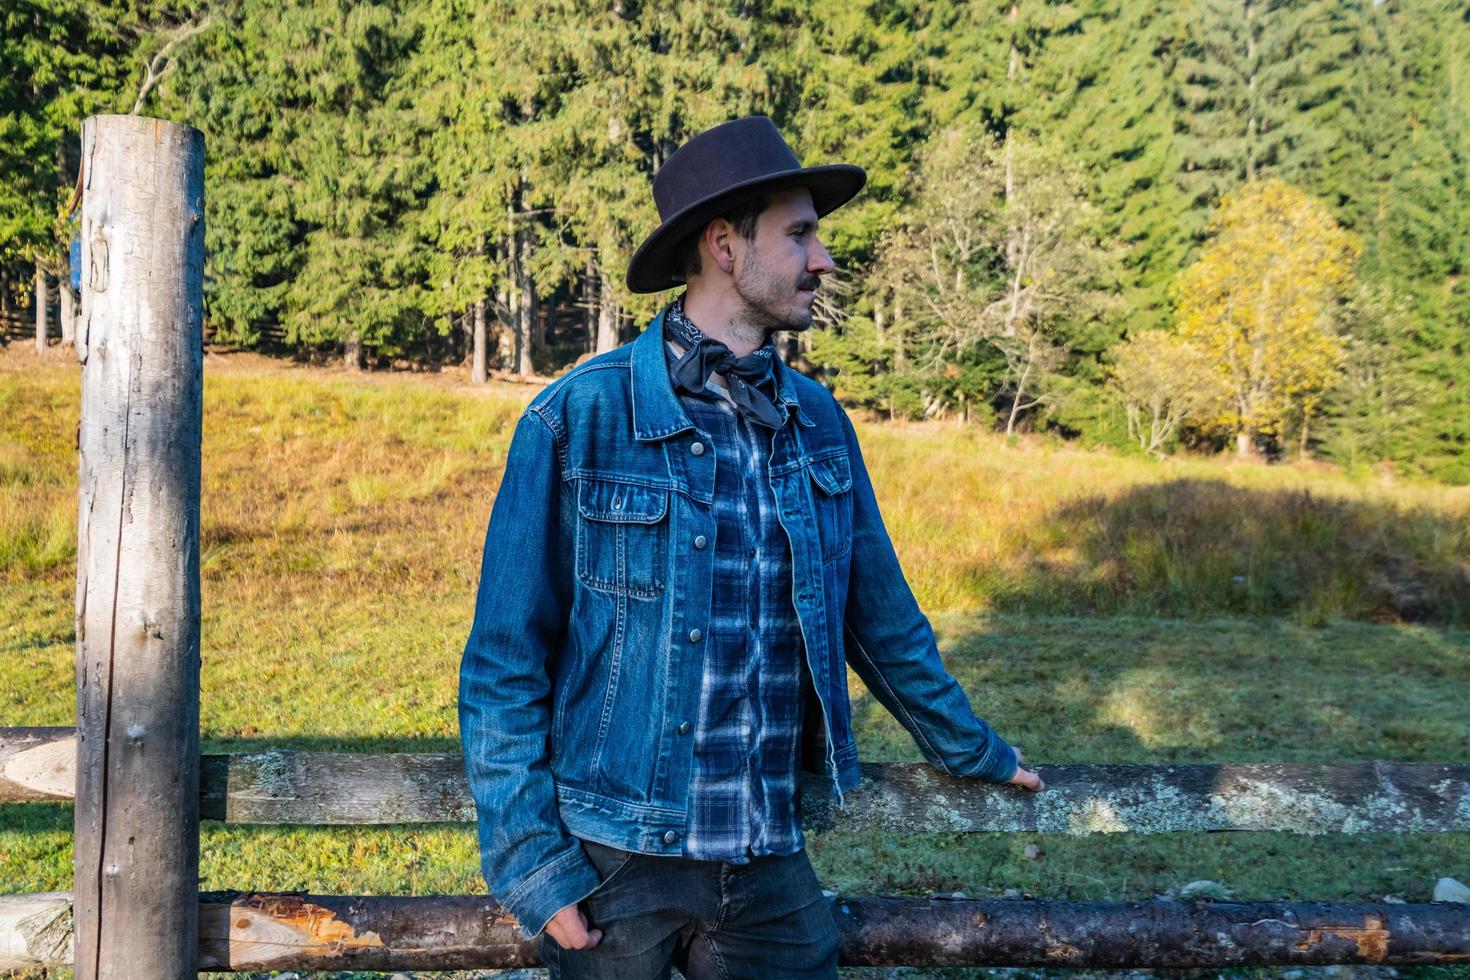 cowboy de jaqueta jeans e chapéu perto da cerca nas montanhas foto